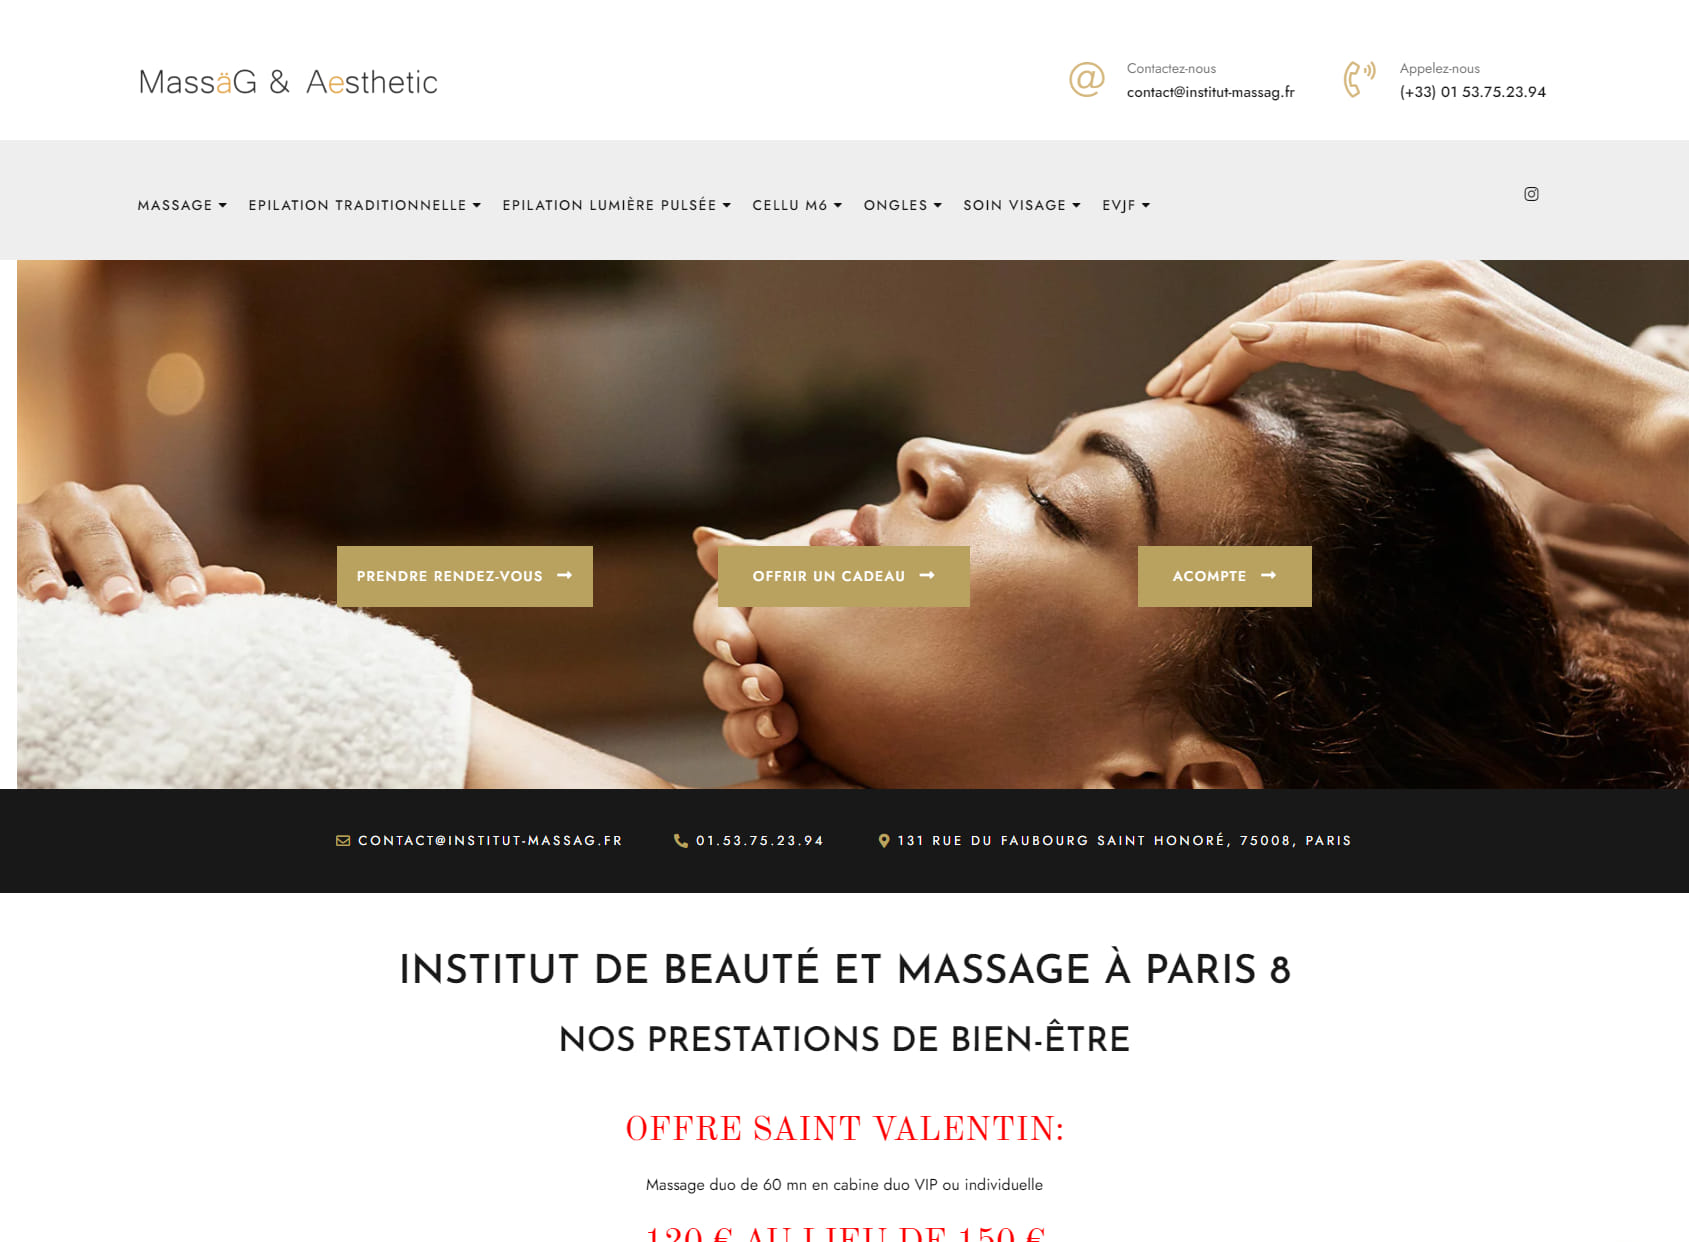 Massages & Aesthetic Institute